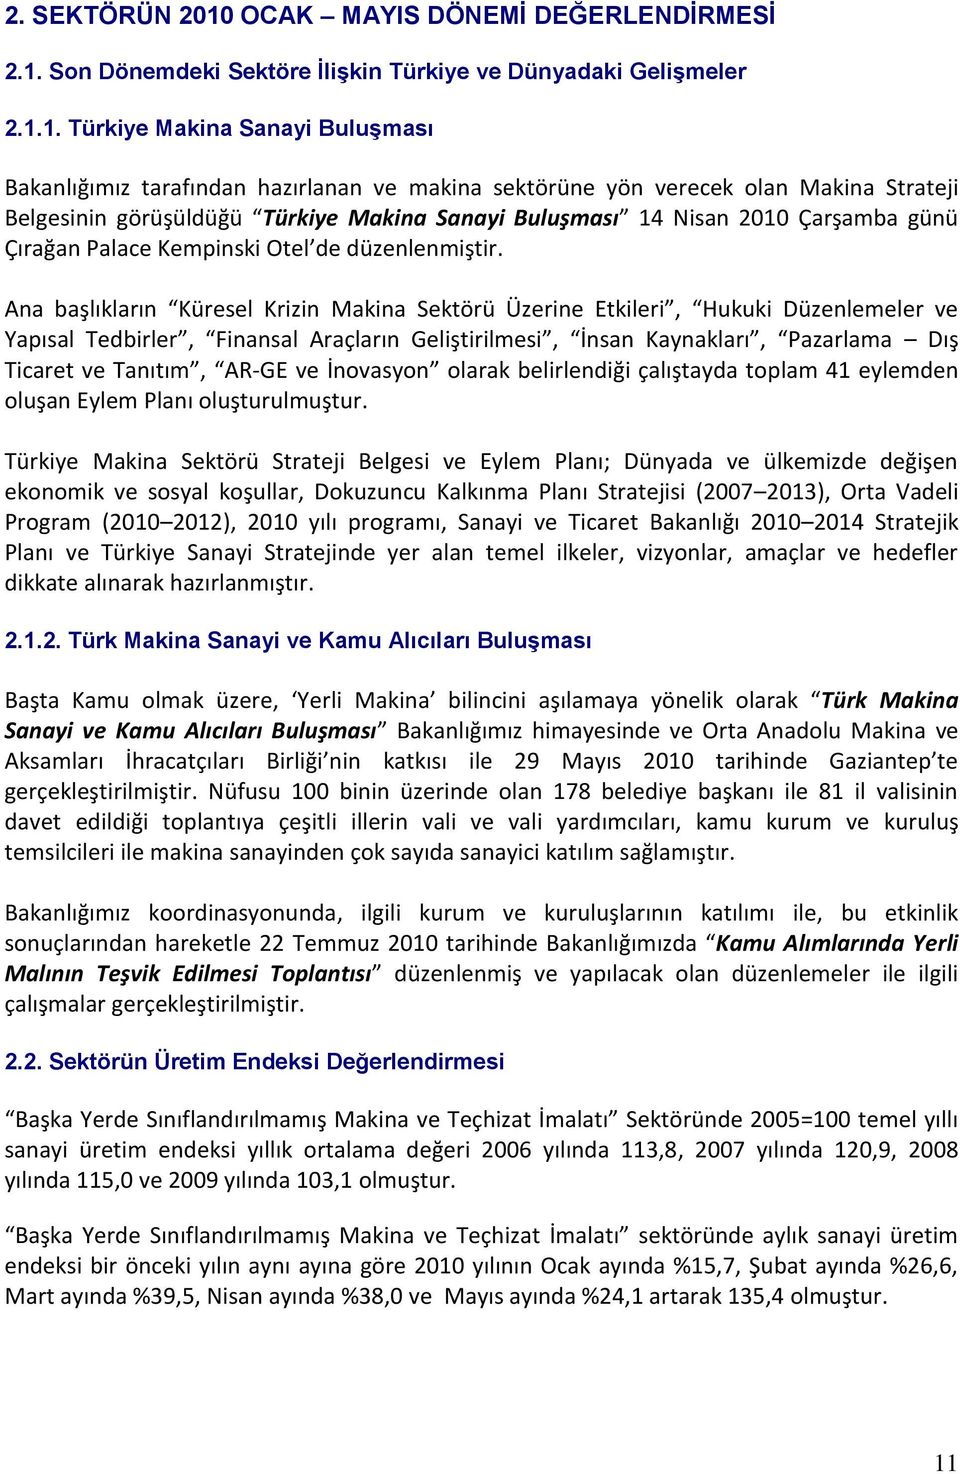 Son Dönemdeki Sektöre ĠliĢkin Türkiye ve Dünyadaki GeliĢmeler 2.1.